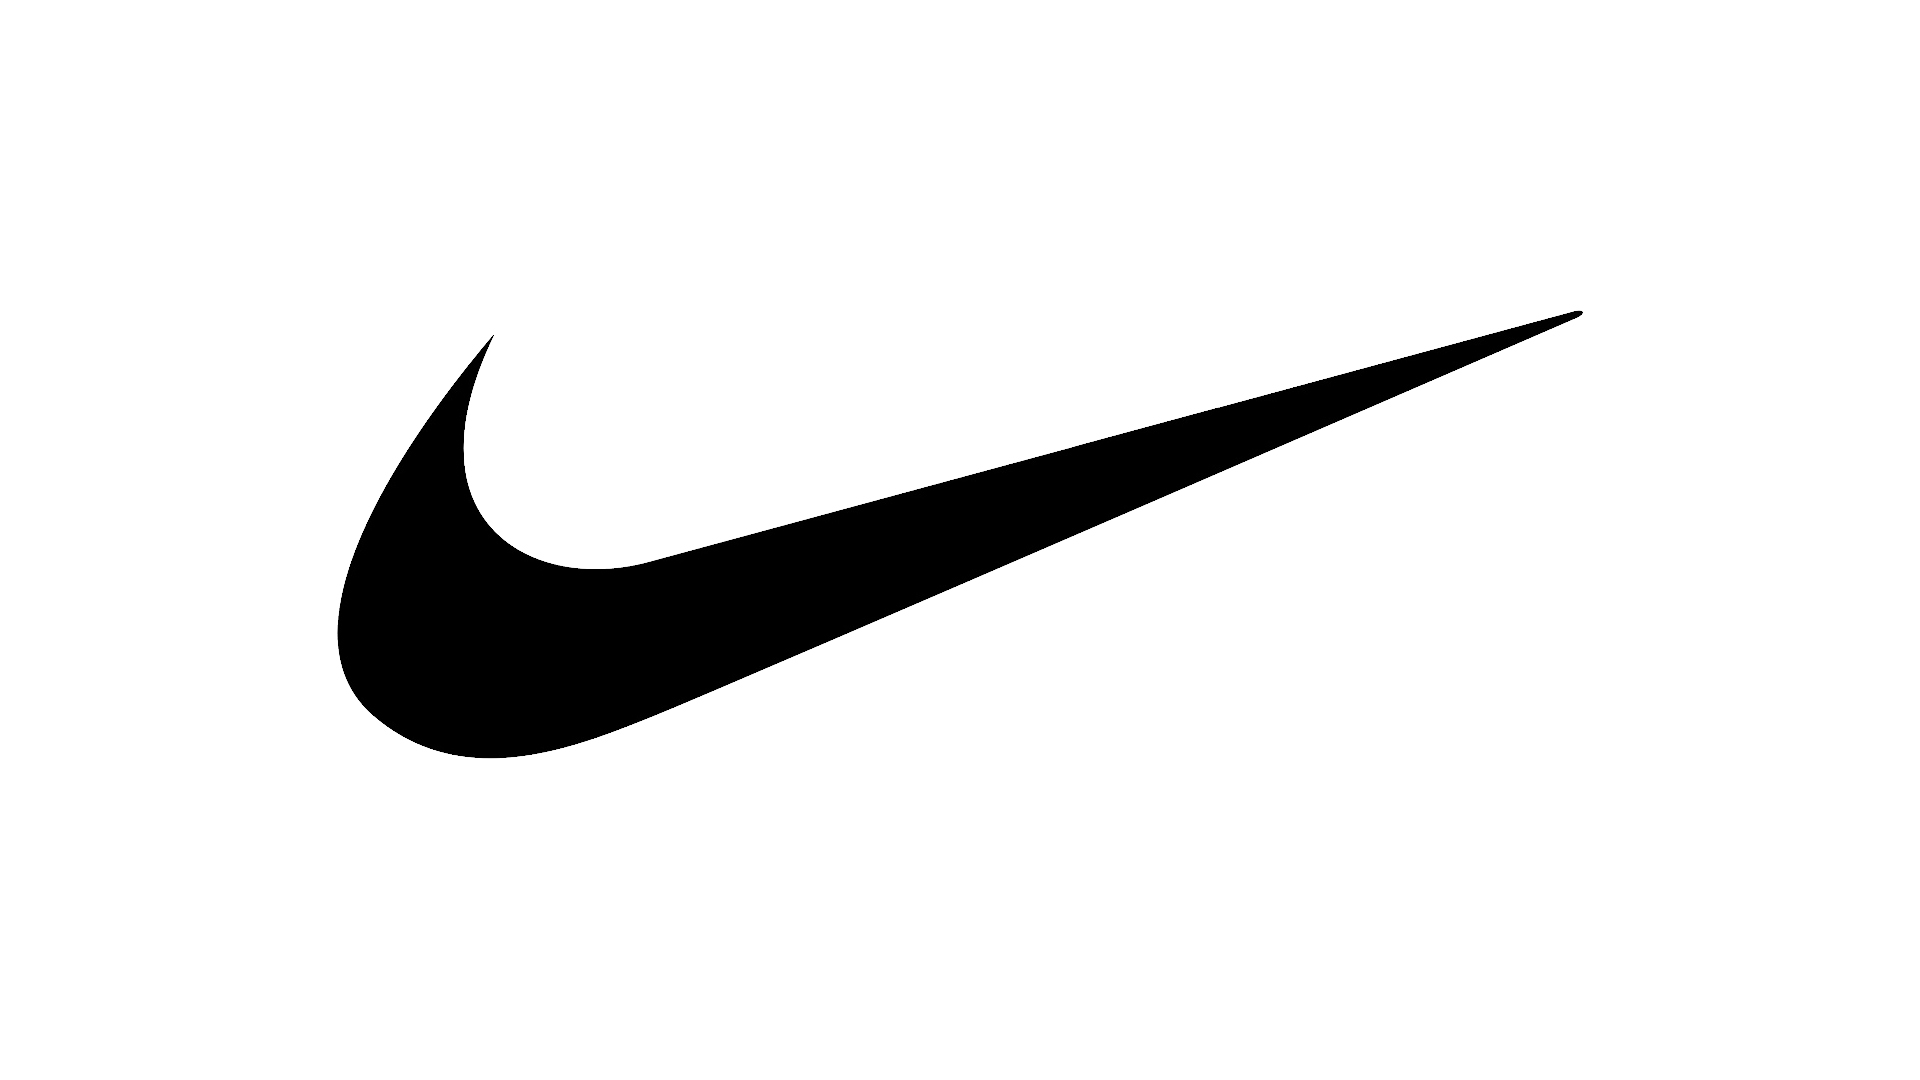 Sự kết hợp giữa trắng và đen trong hình nền của Nike tạo ra sự cân bằng độc đáo và không thể nào chối từ. Xem hình ảnh để cảm nhận sự thăng hoa và tột bậc của sự tinh tế từ Nike!